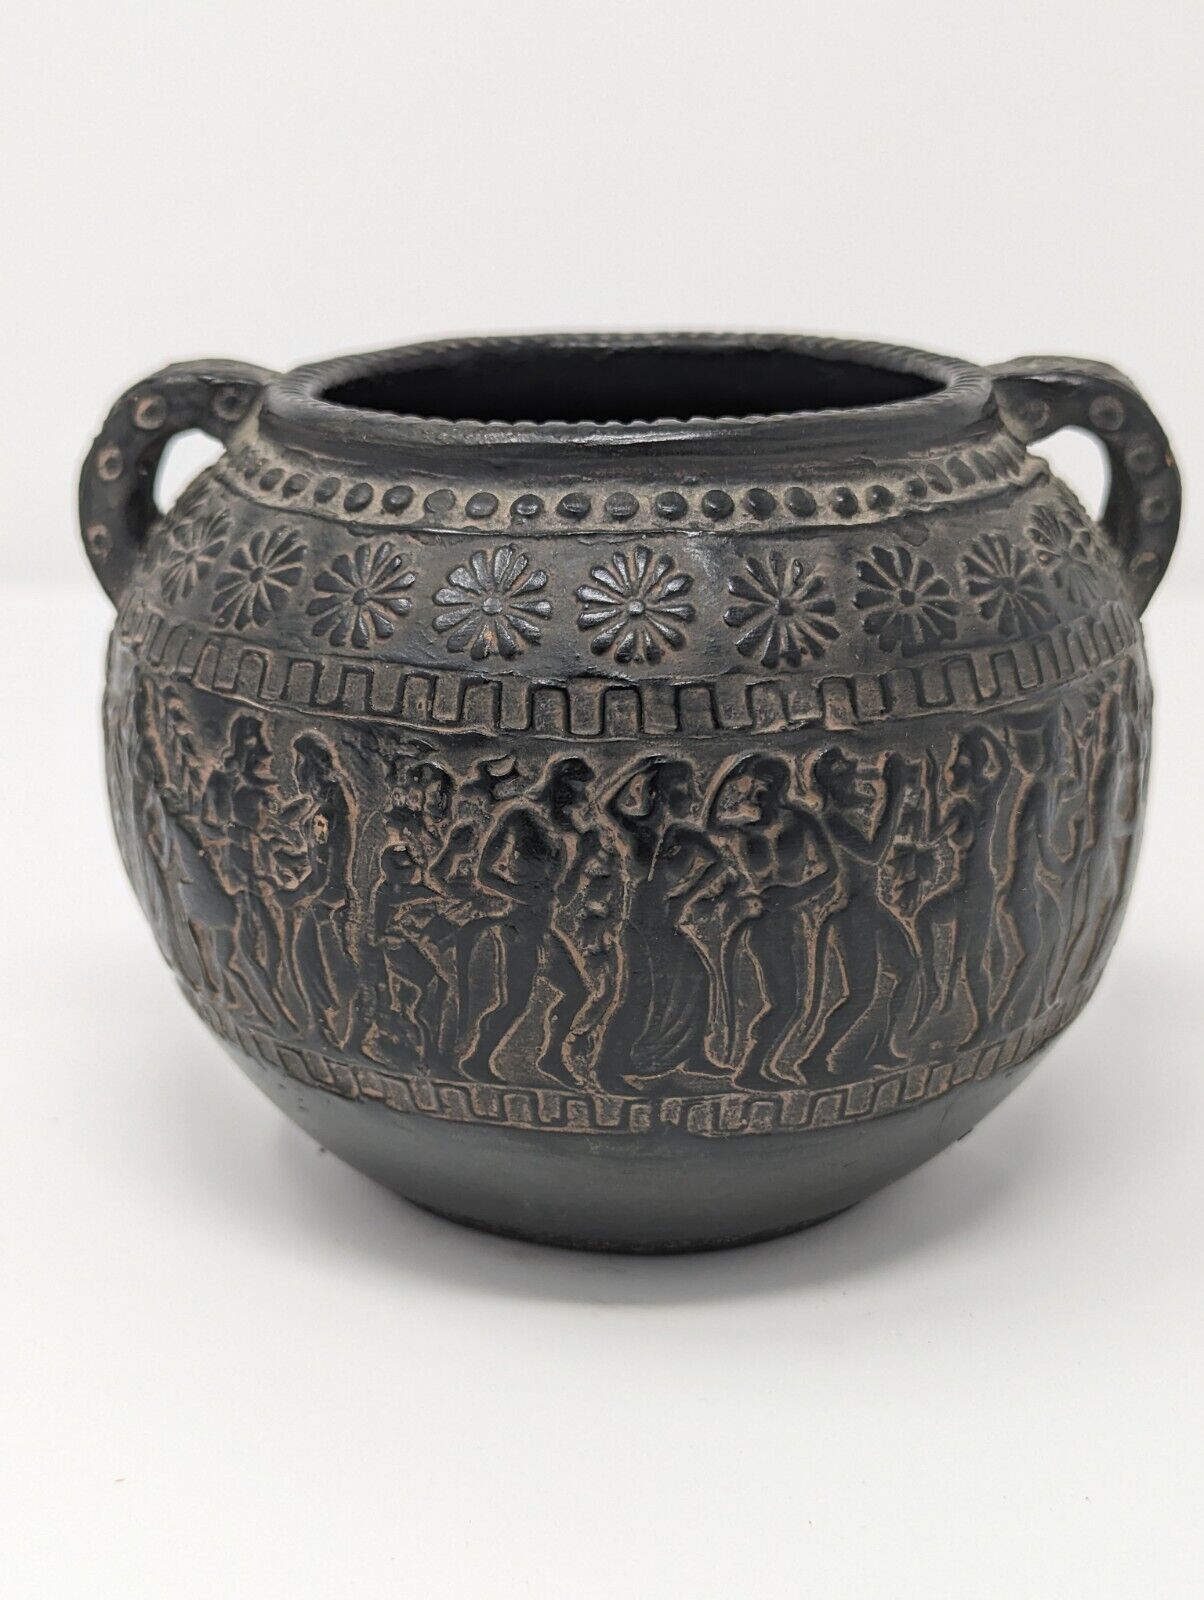 Vintage Carved Stoneware Bowl 5” Black Made In Greece Gods Mythology Souvenir